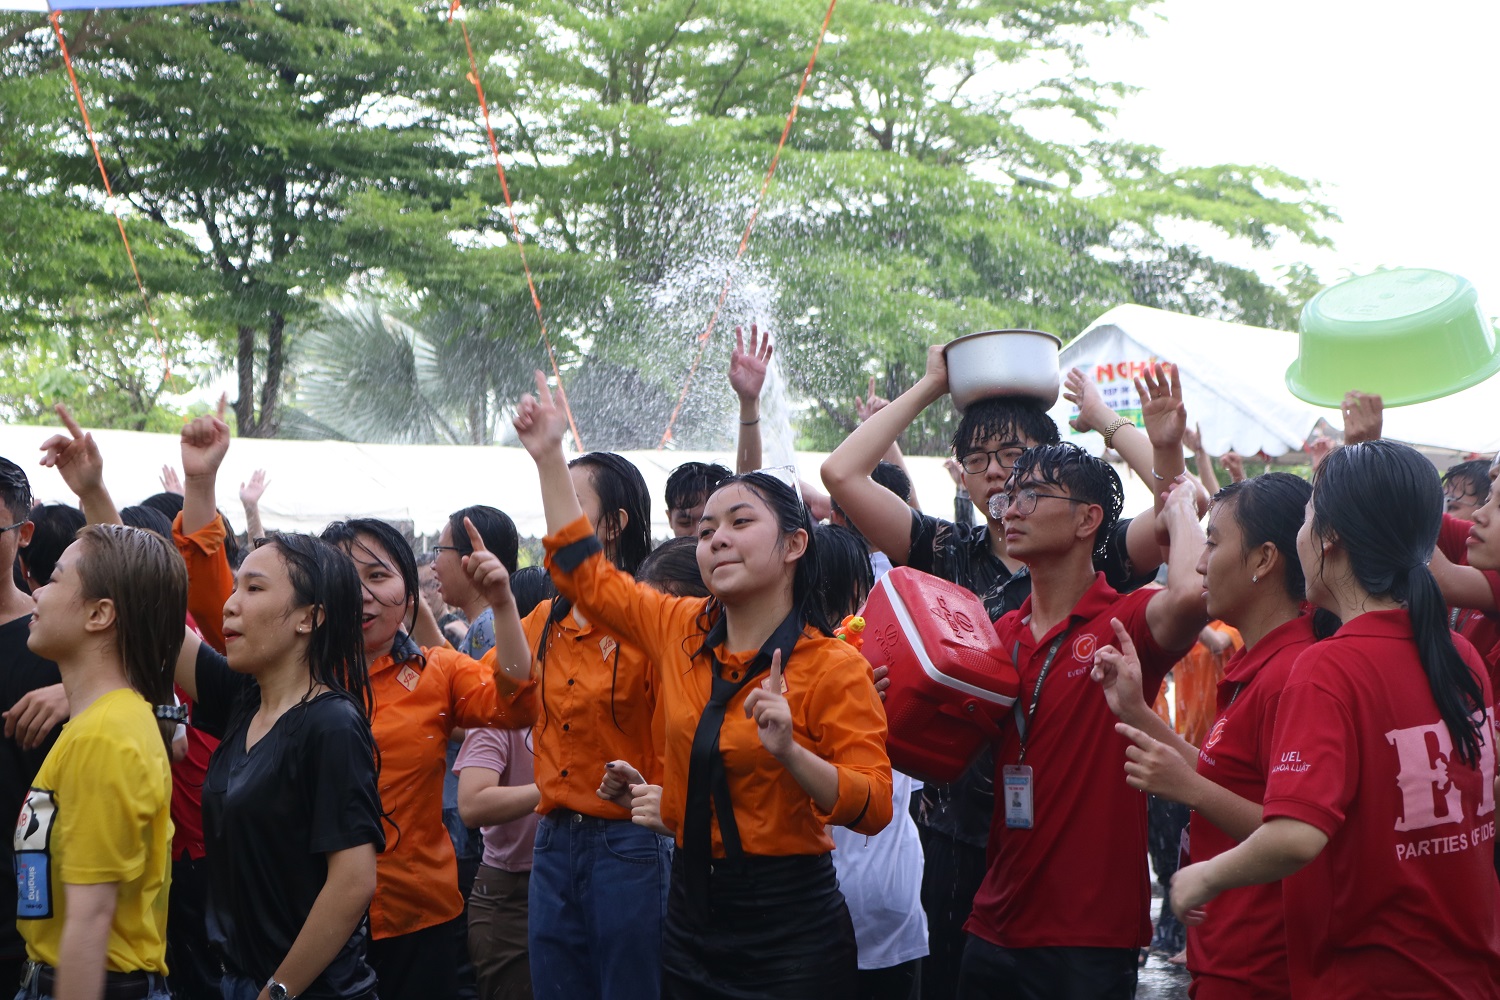 Sinh viên “quẩy” tưng bừng trong lễ hội té nước